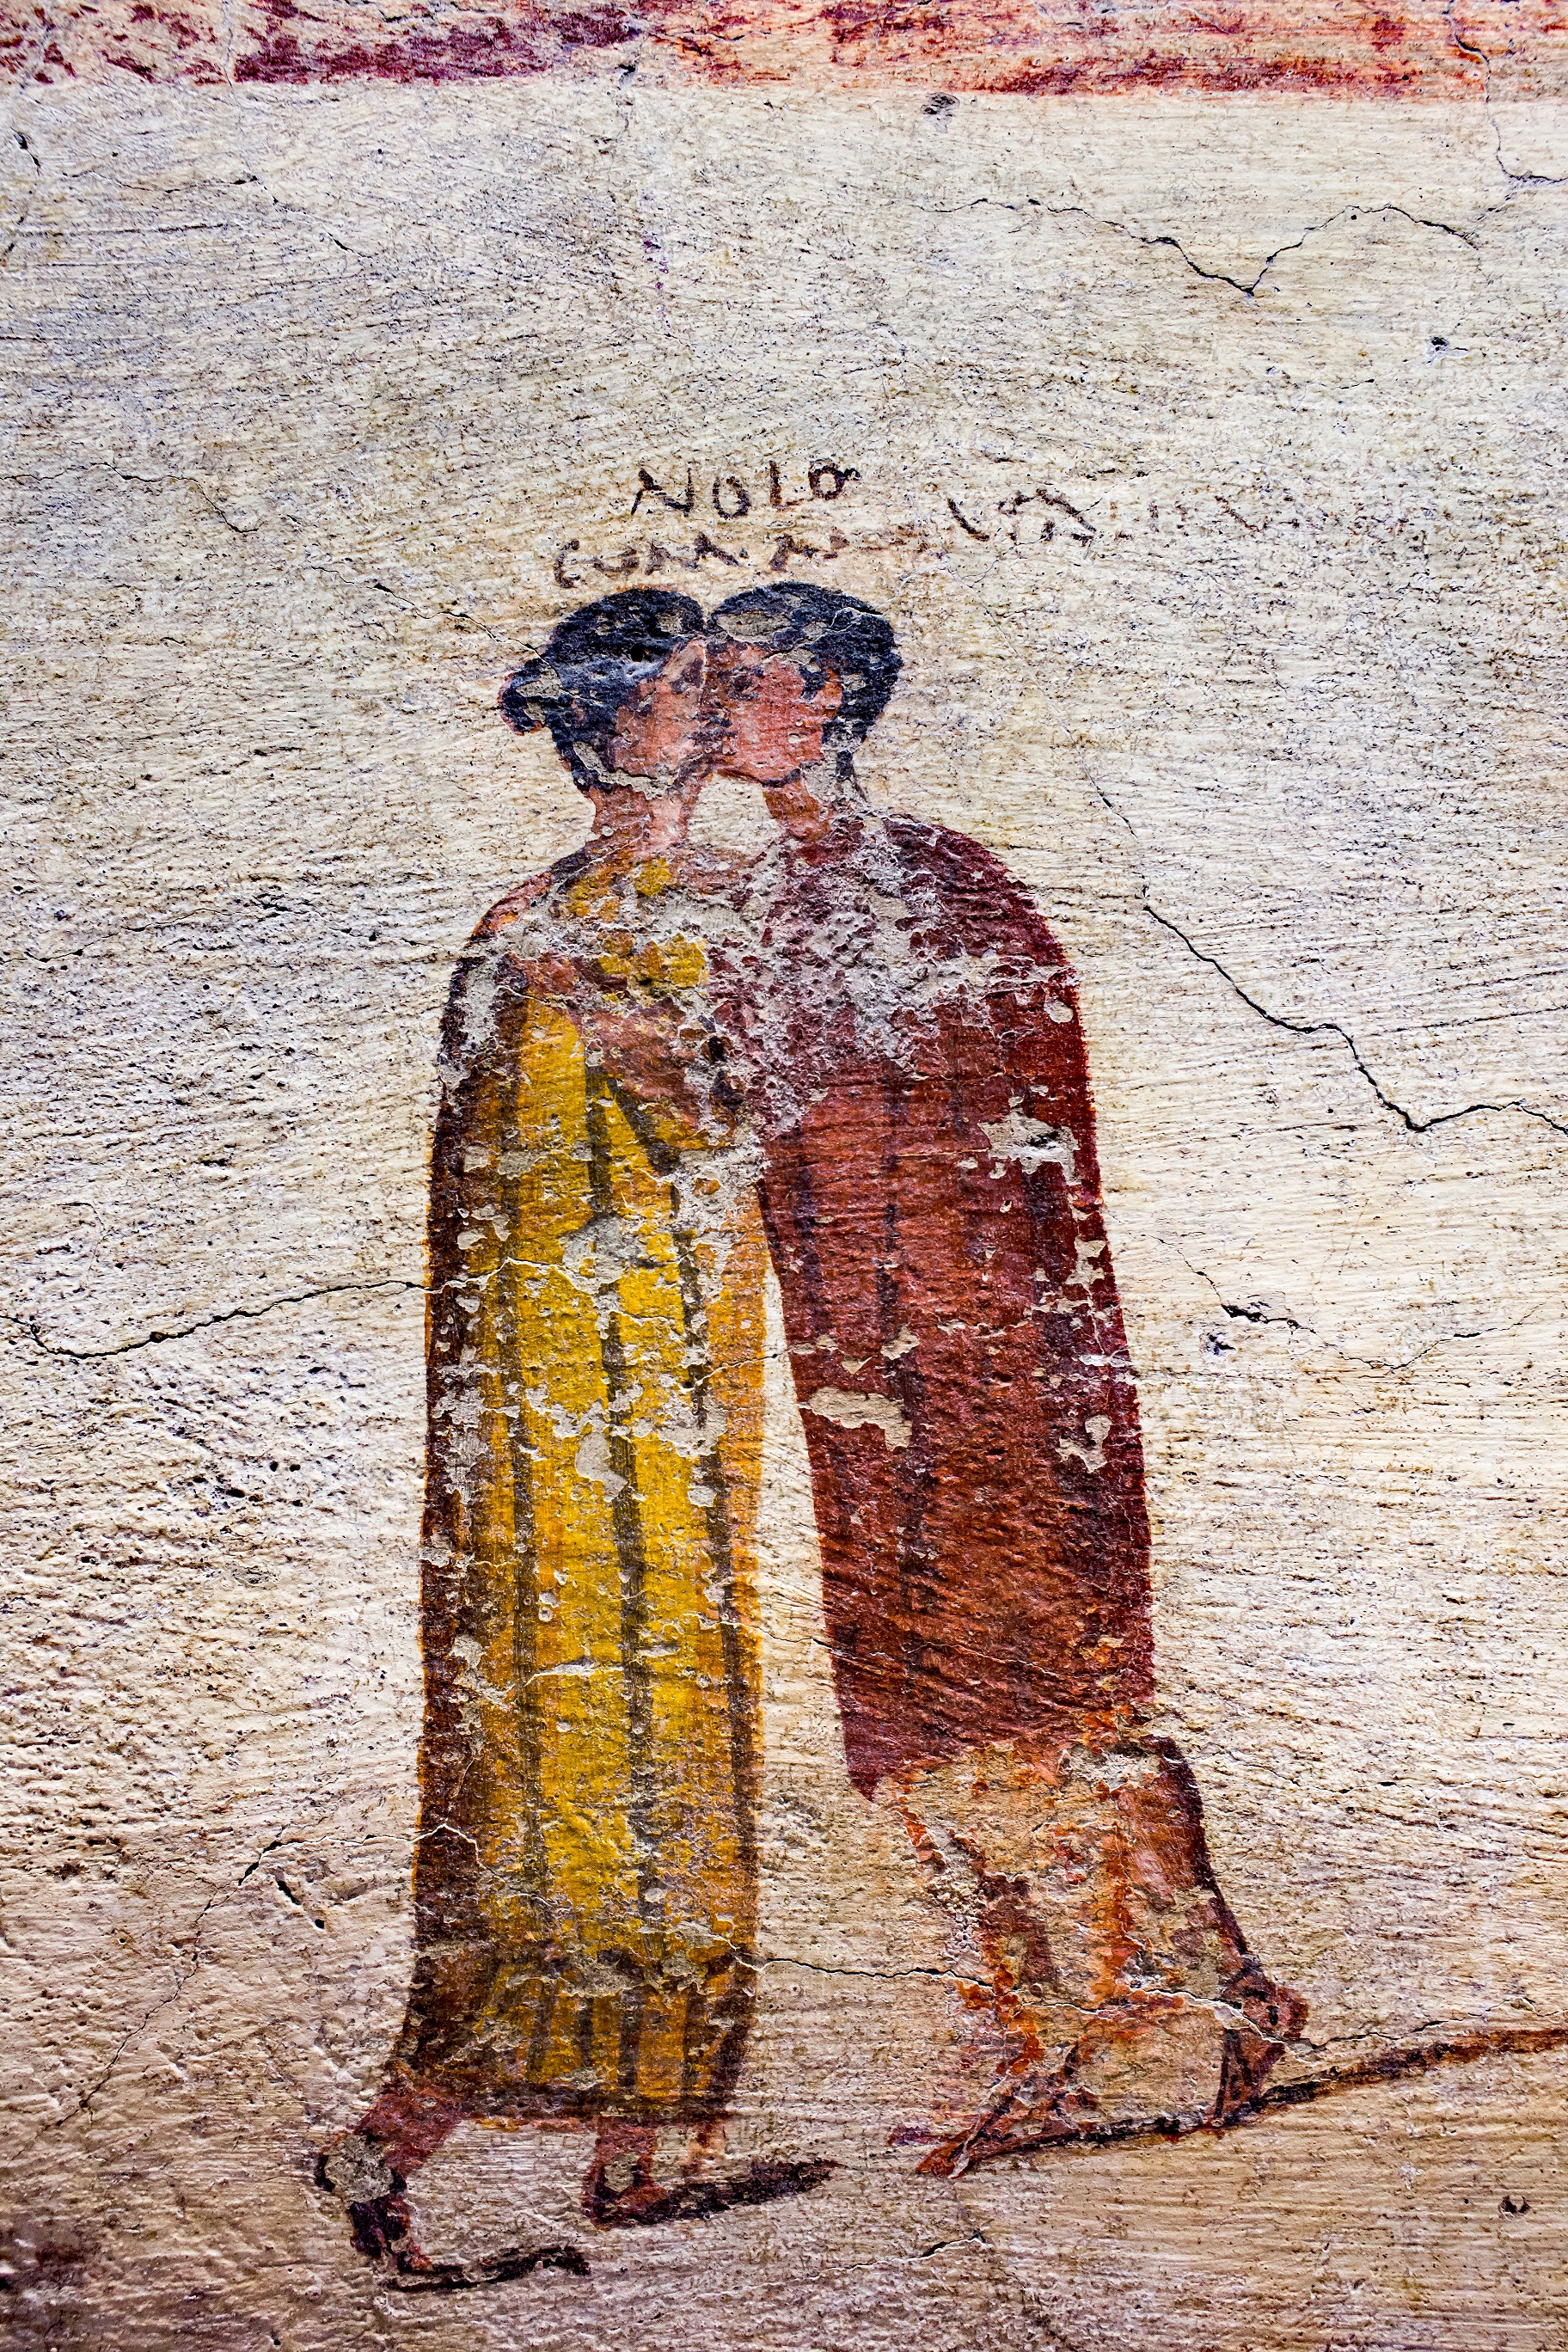 Csókolózó pár Pompeiiben (fotó: Wikipedia)